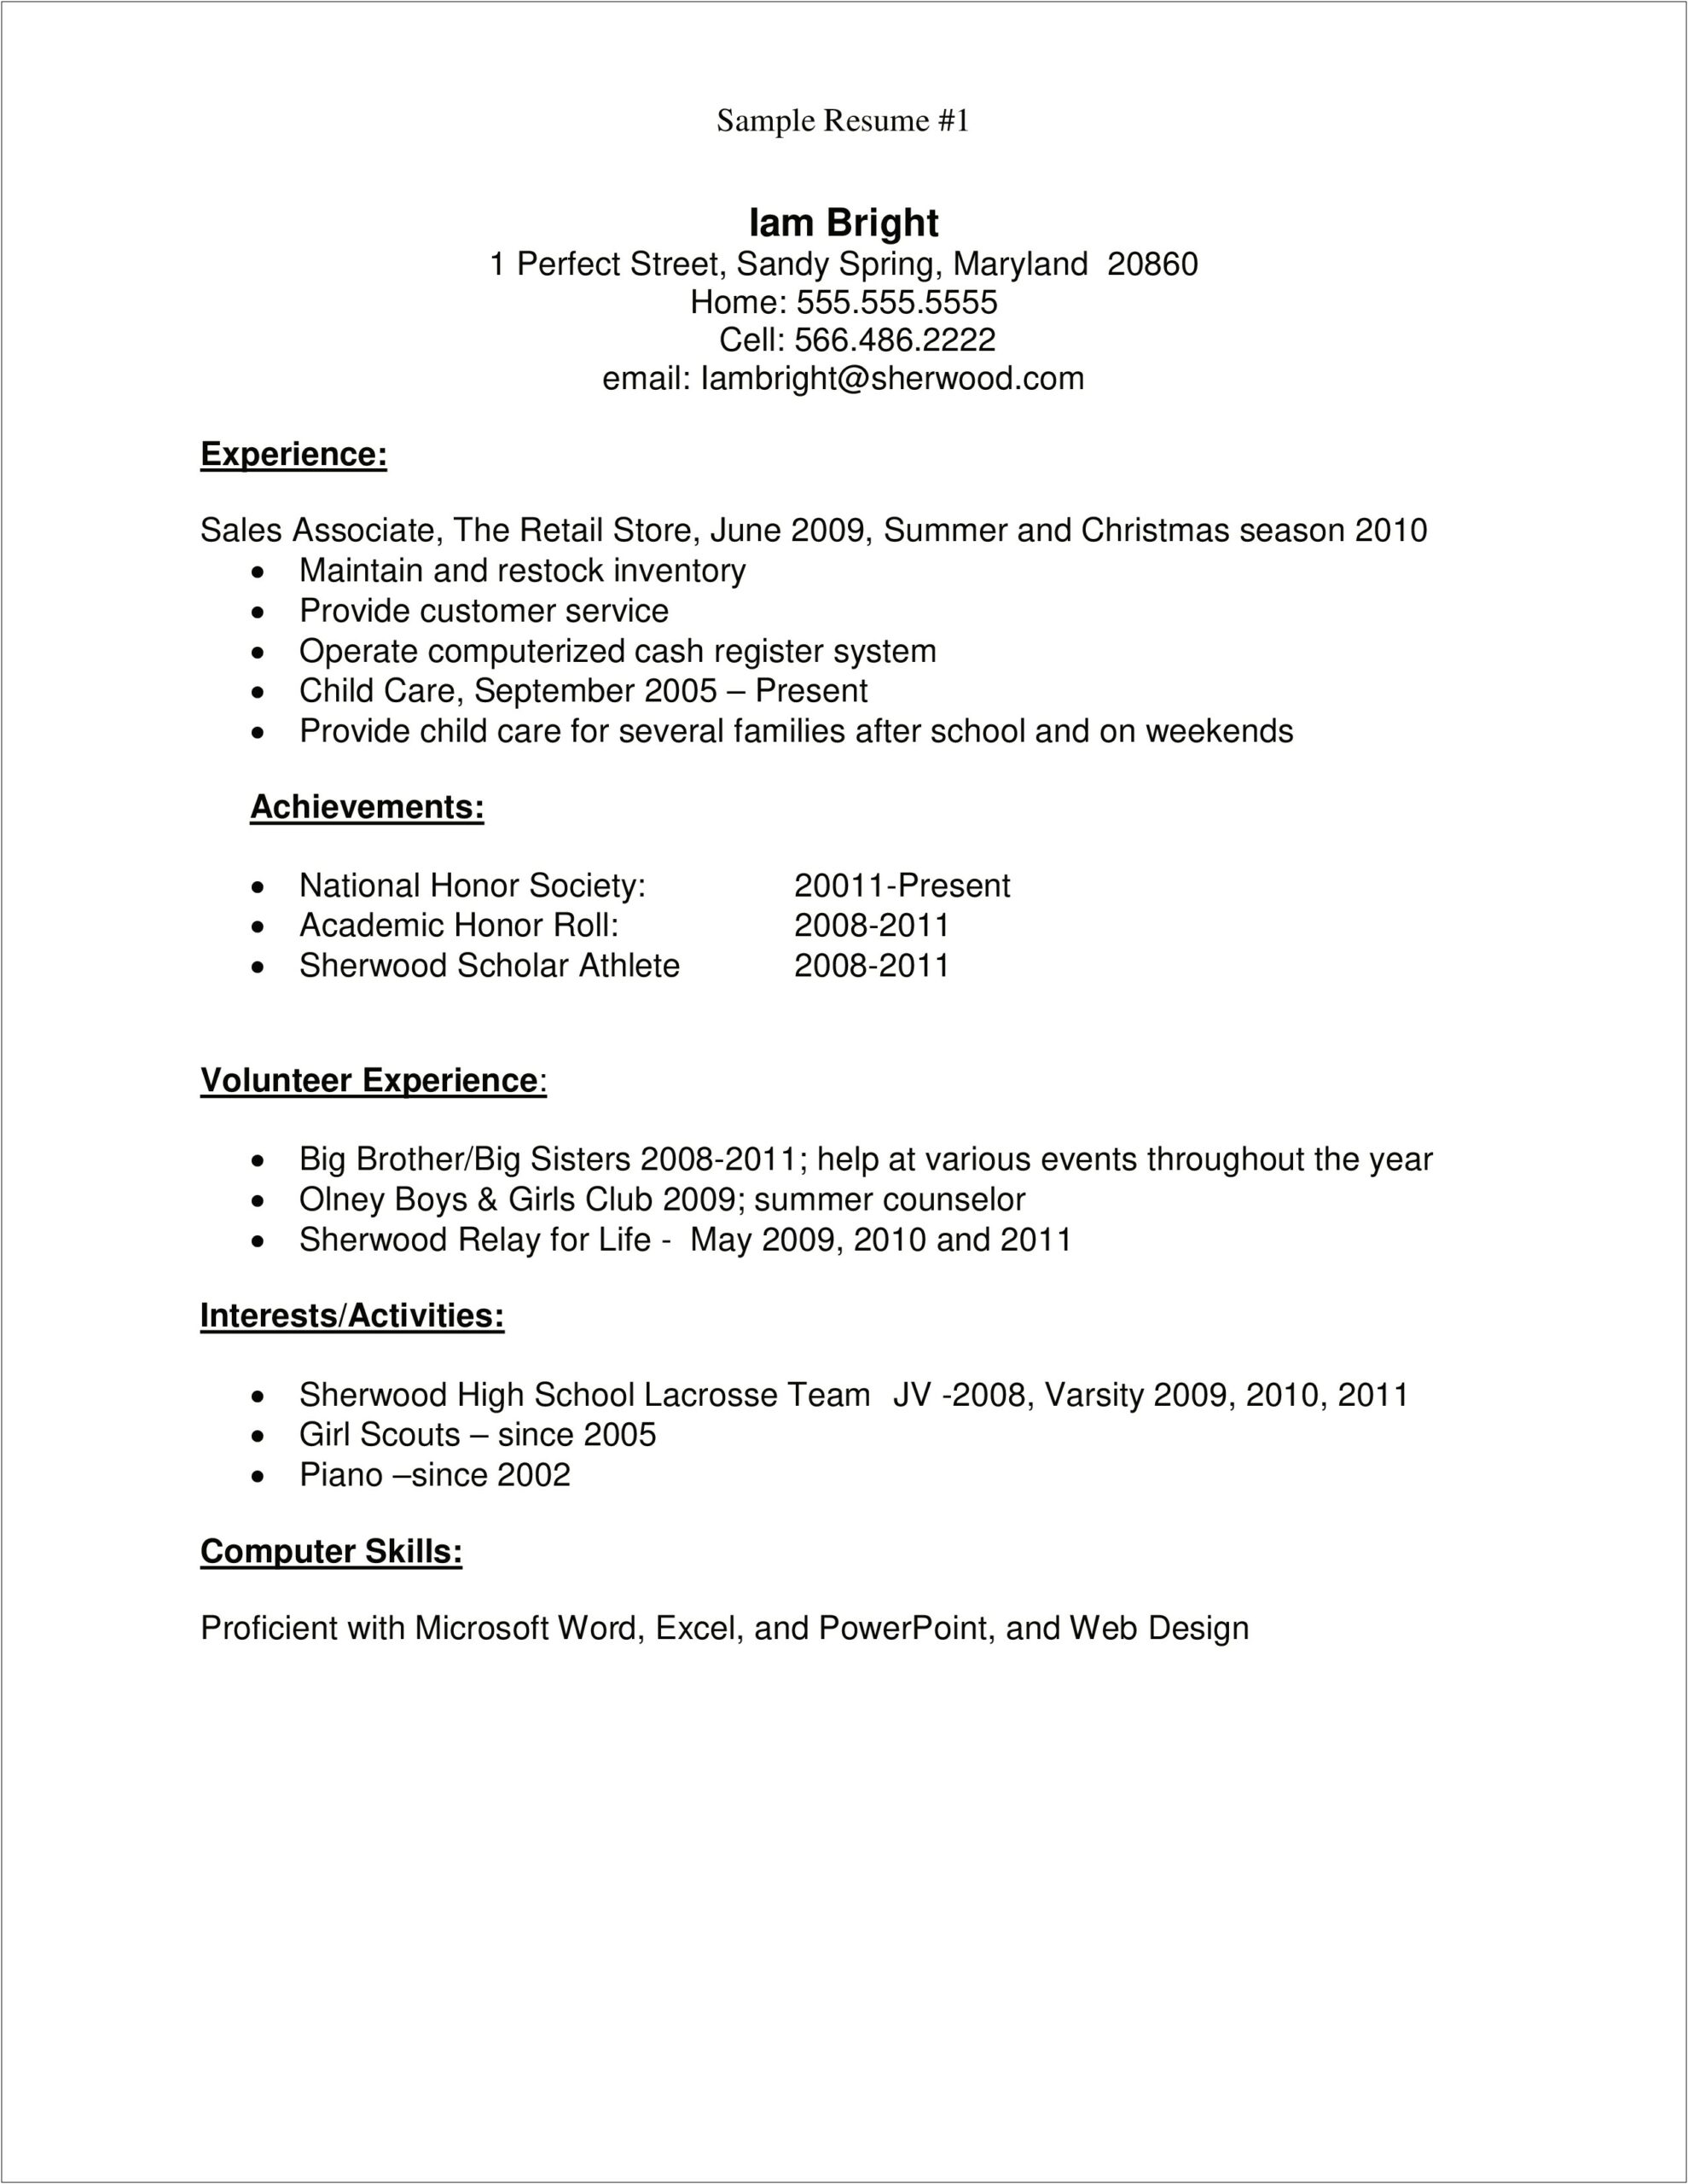 Child Care Provider Job Description Resume